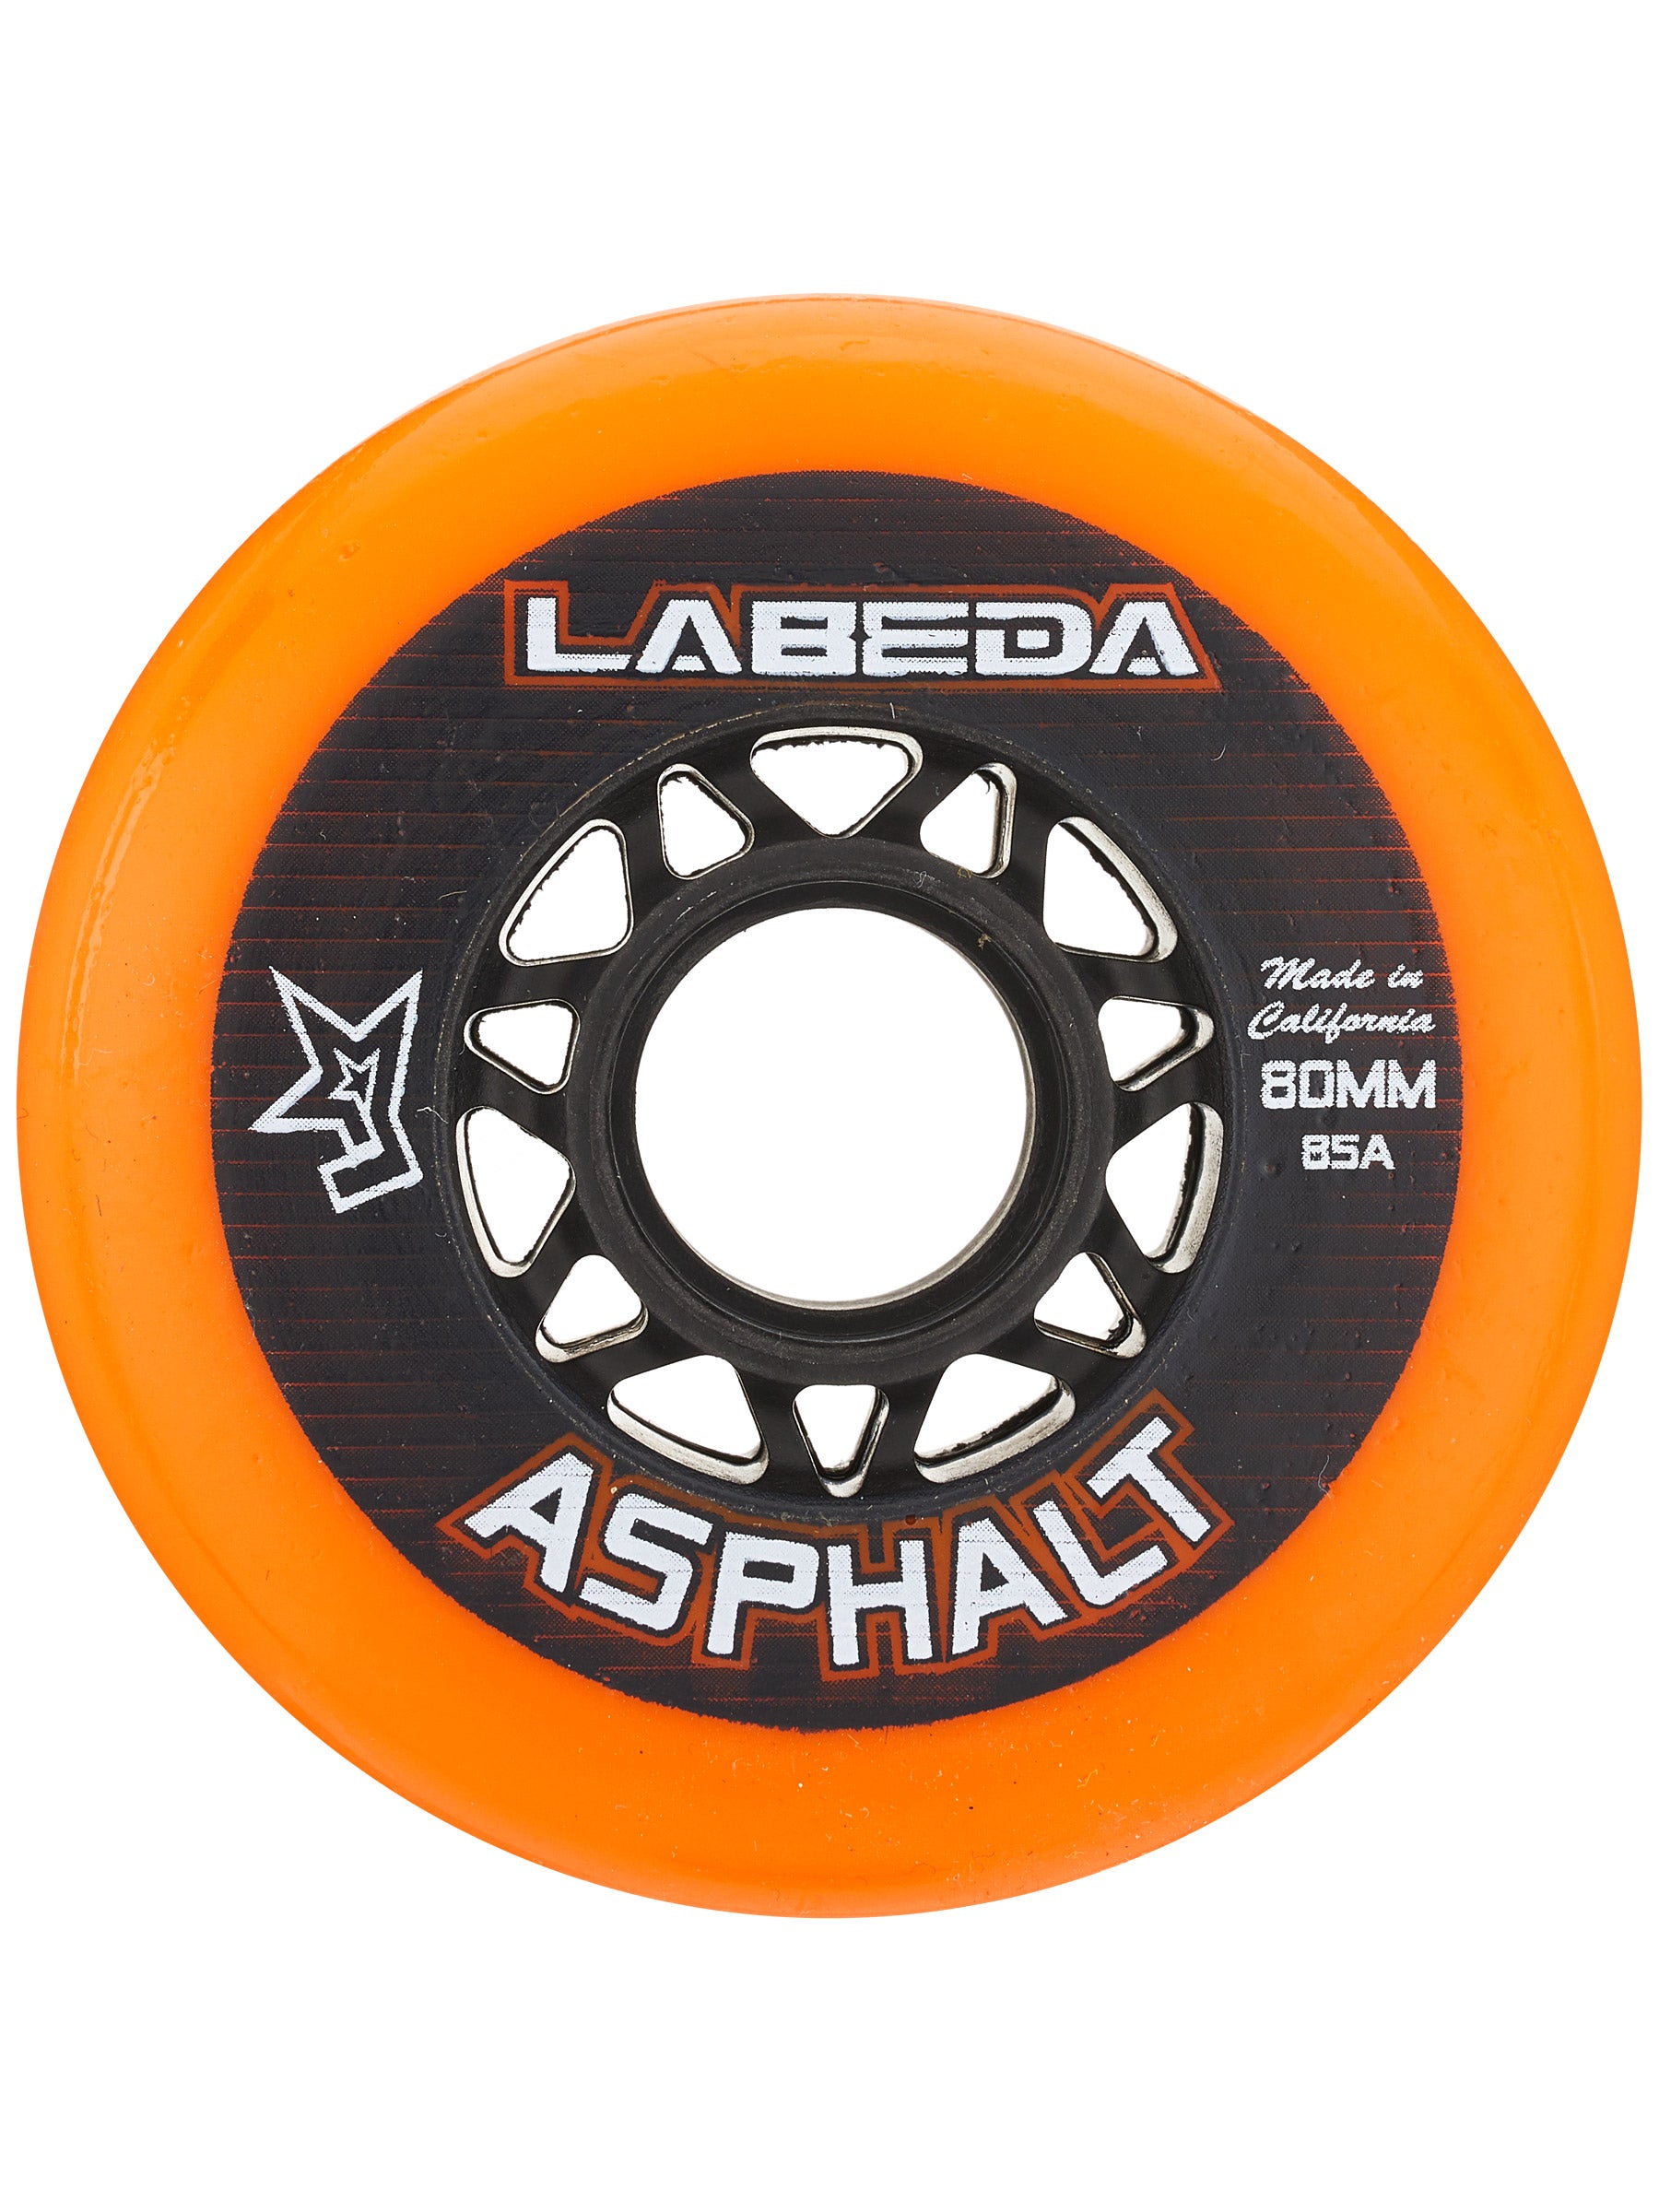 Labeda Gripper Asphalt Outdoor Inline Roller Hockey Wheels with Ceramic Bearings 